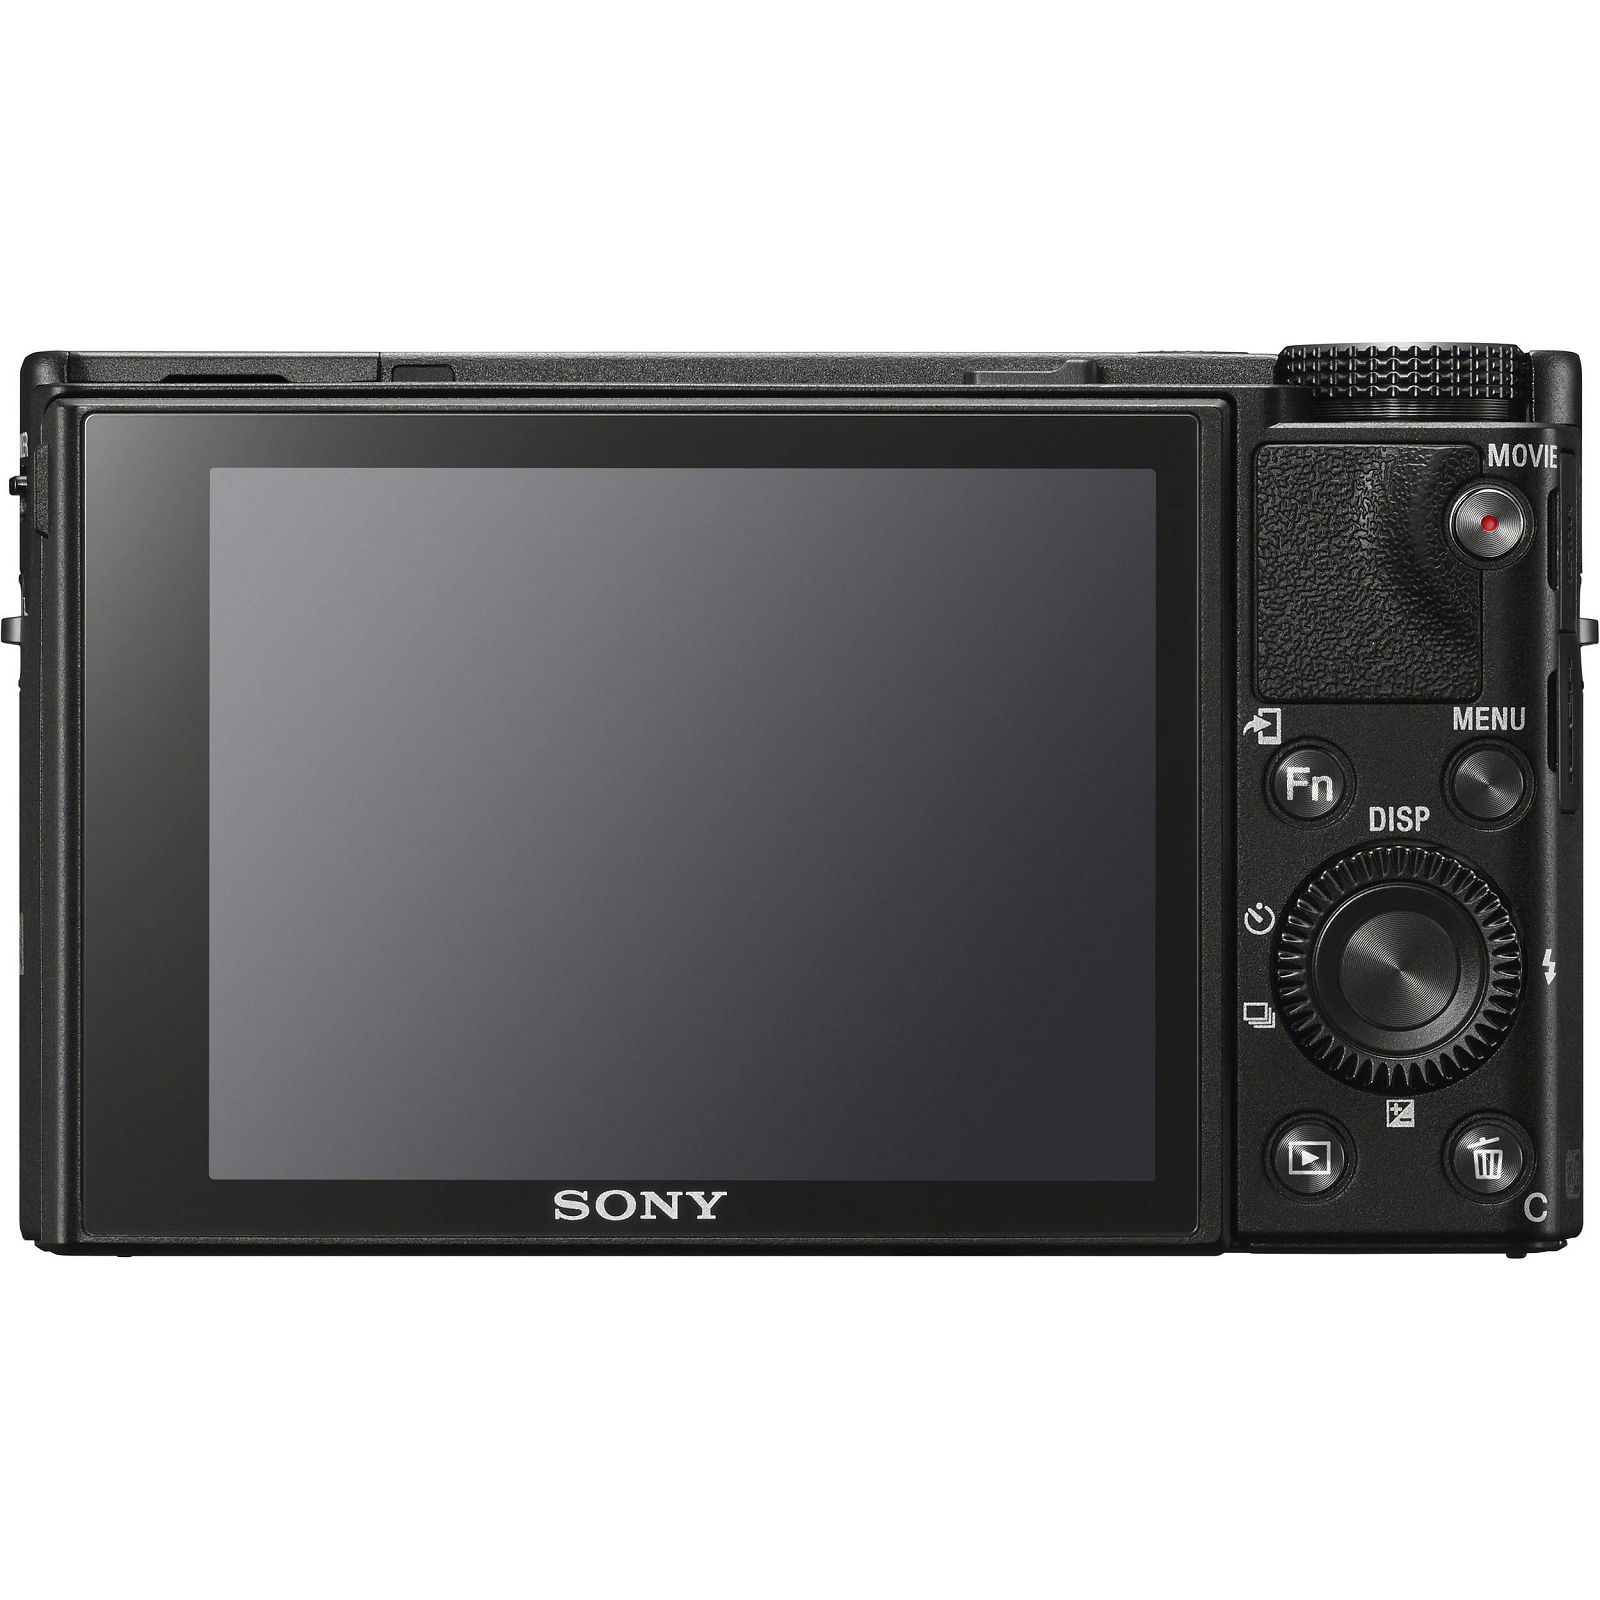 Sony Cyber-shot DSC-RX100 M6 Black crni Digitalni fotoaparat s integriranim objektivom Carl Zeiss Vario-Sonnar T* 9-72mm f/2.8-4.5 Digital Camera RX100 VI RX-100 DSCRX100M6 20.2Mp (DSCRX100M6.CE3)